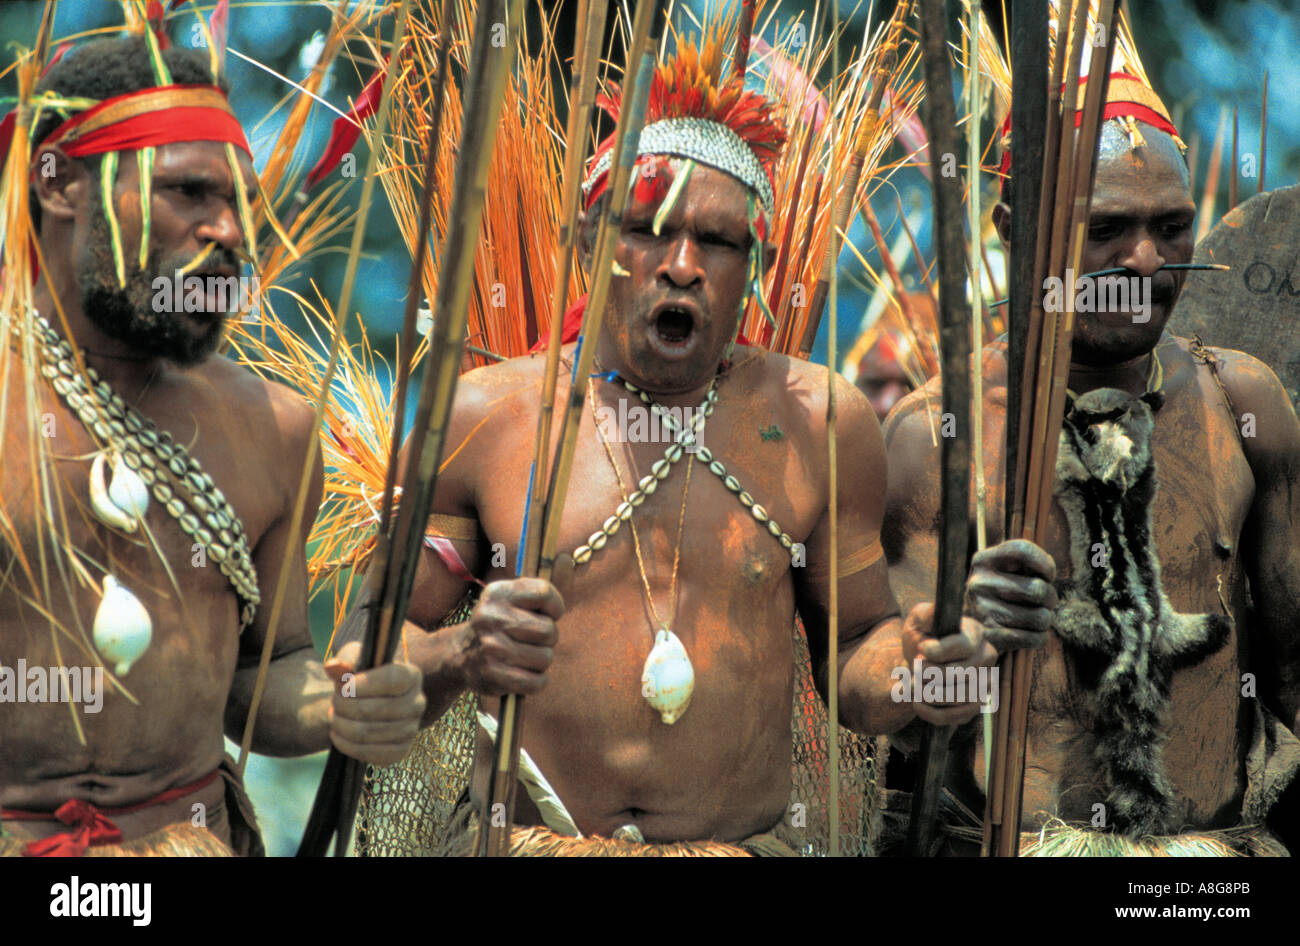 Autochtones décorées, Goroka, Papouasie Nouvelle Guinée Banque D'Images